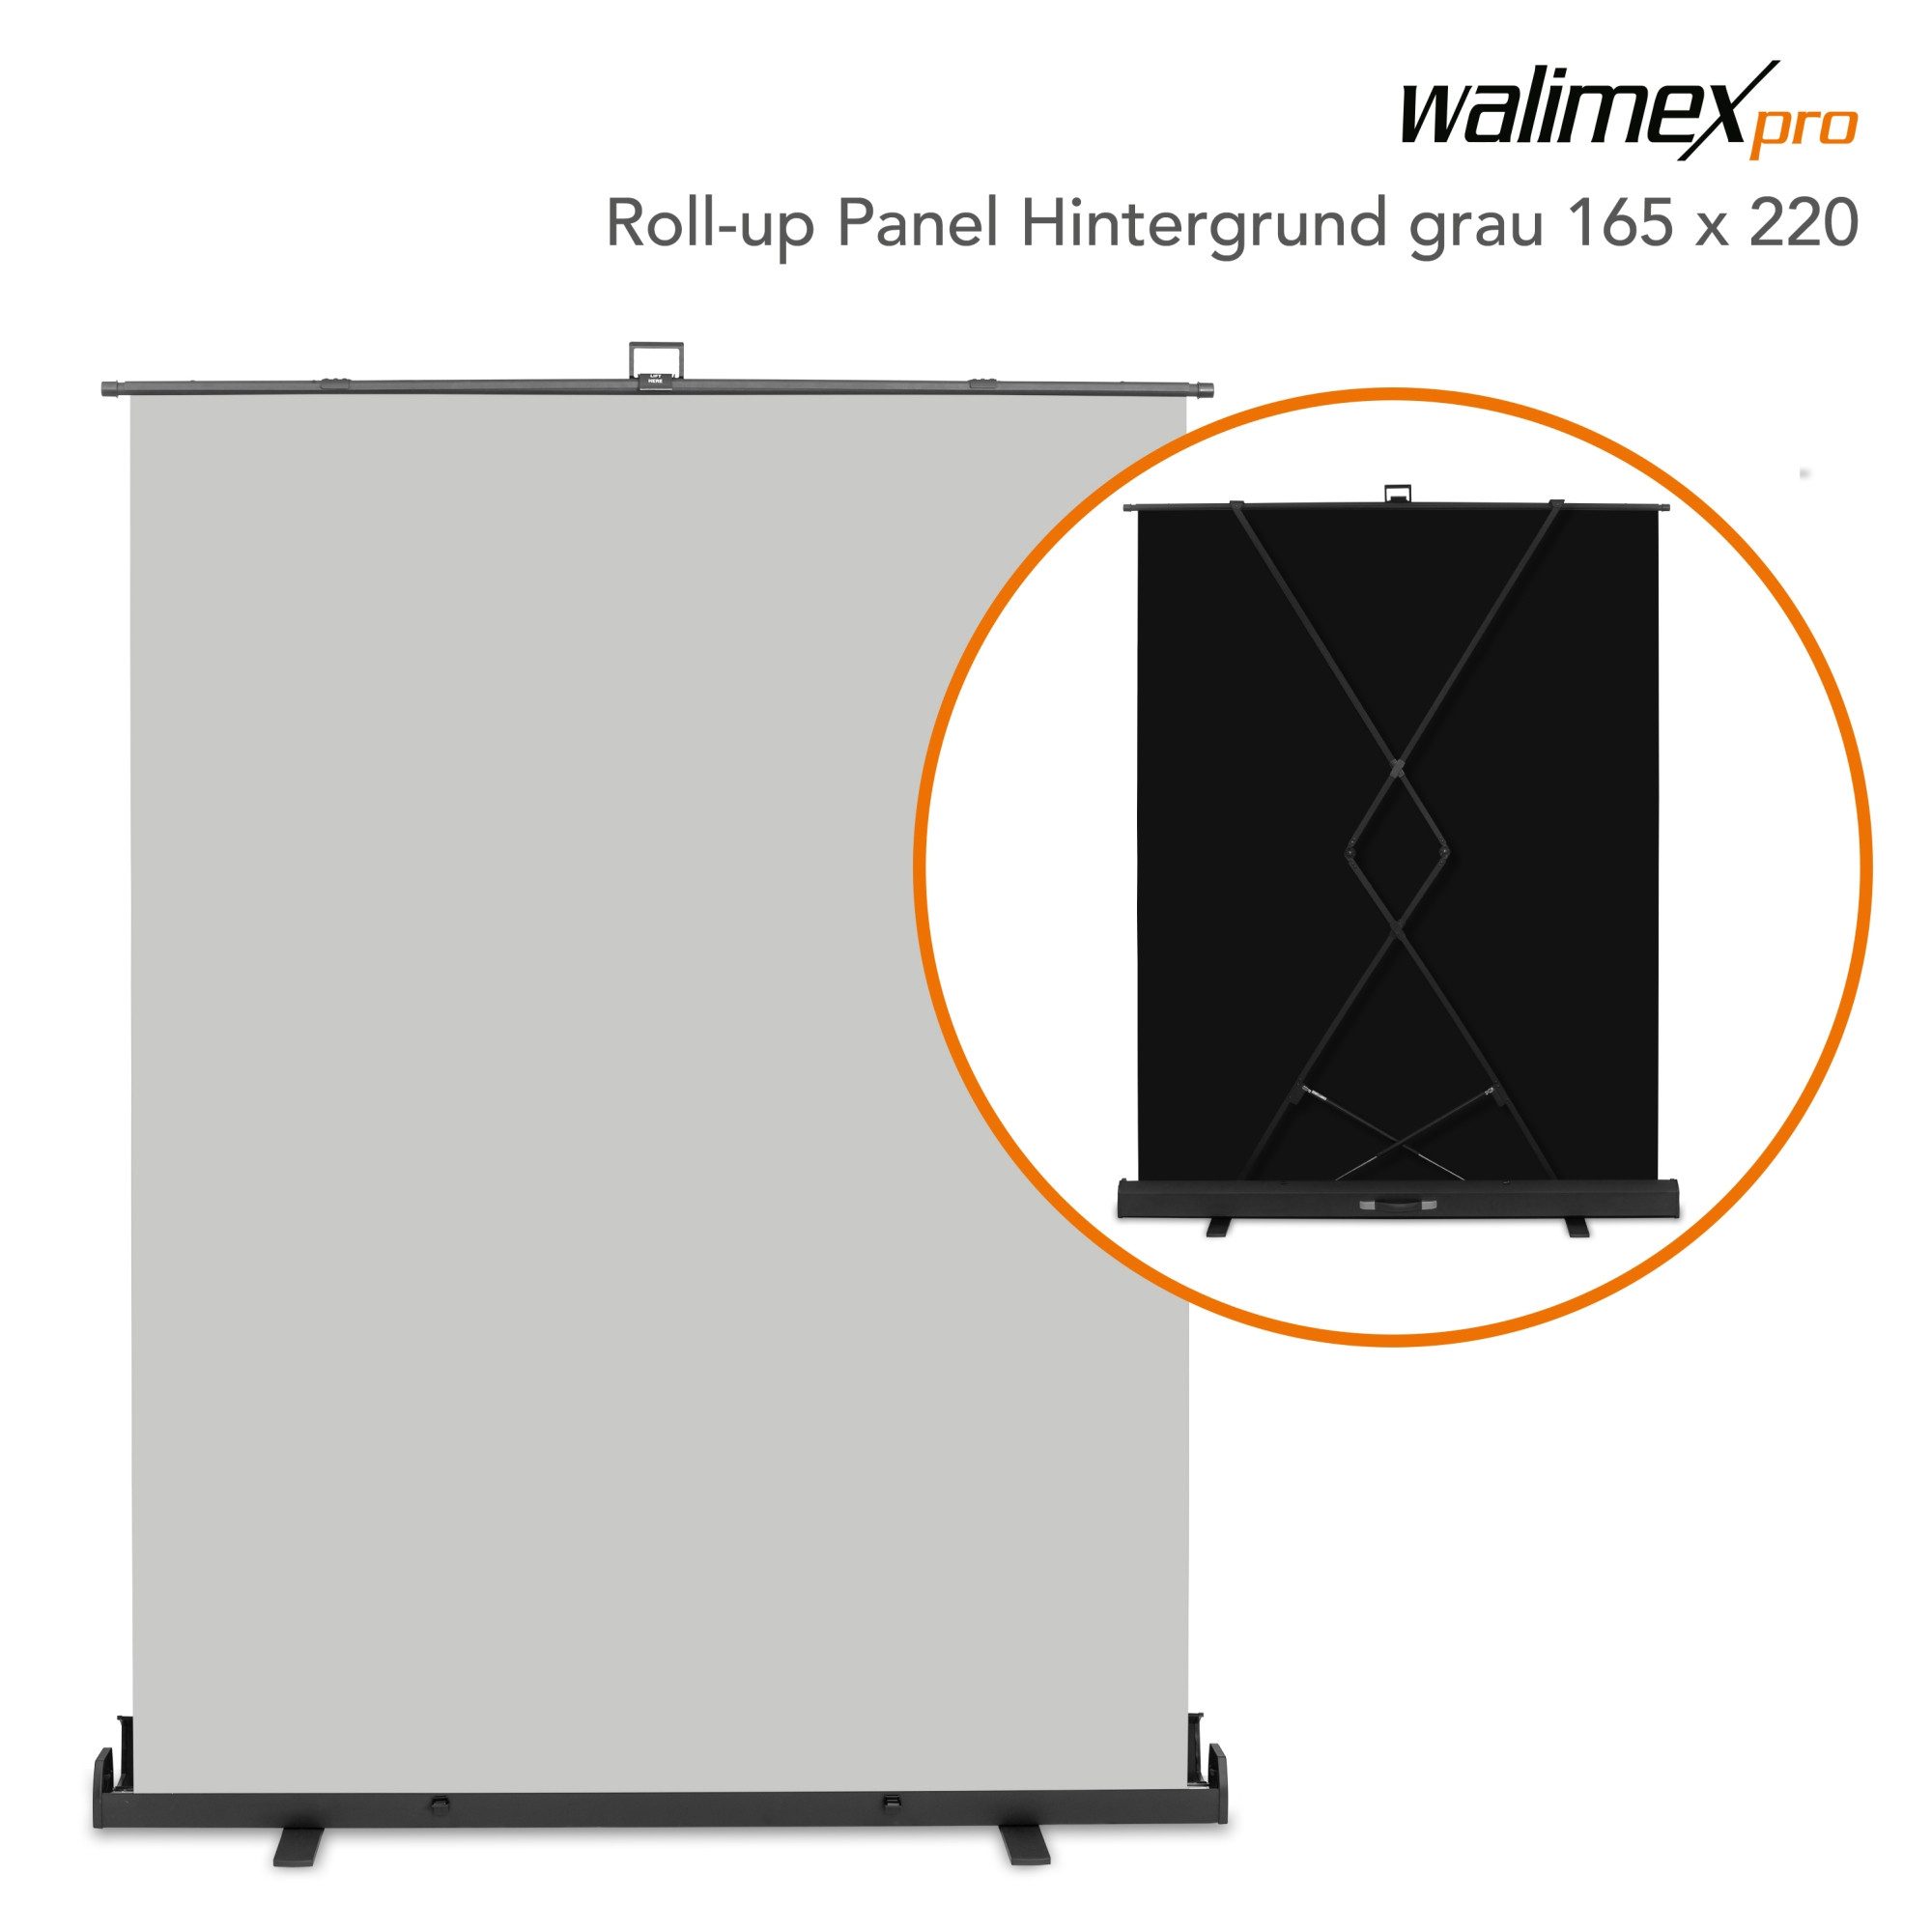 Walimex Pro Fotohintergrund Roll-up Panel Hintergrund grau 165x220